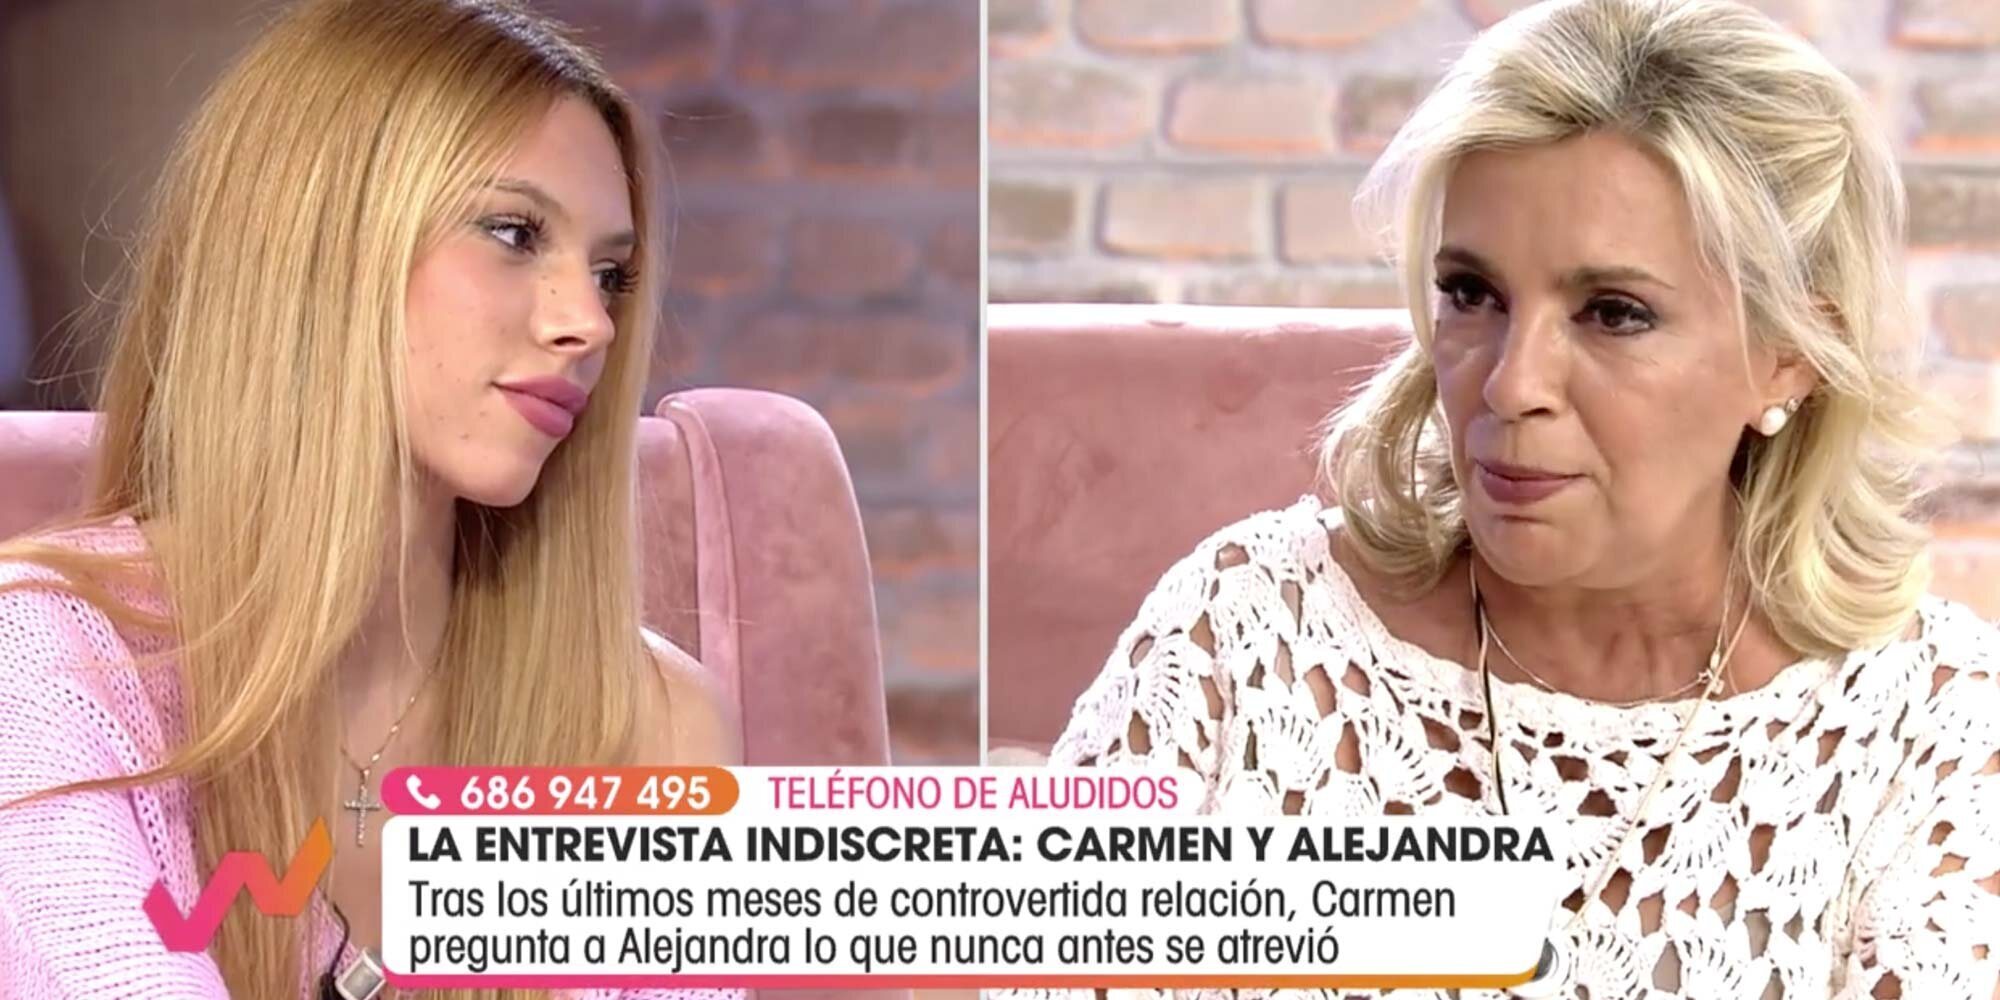 Alejandra Rubio, clara y directa con su tía Carmen Borrego: "Tú misma te haces daño"